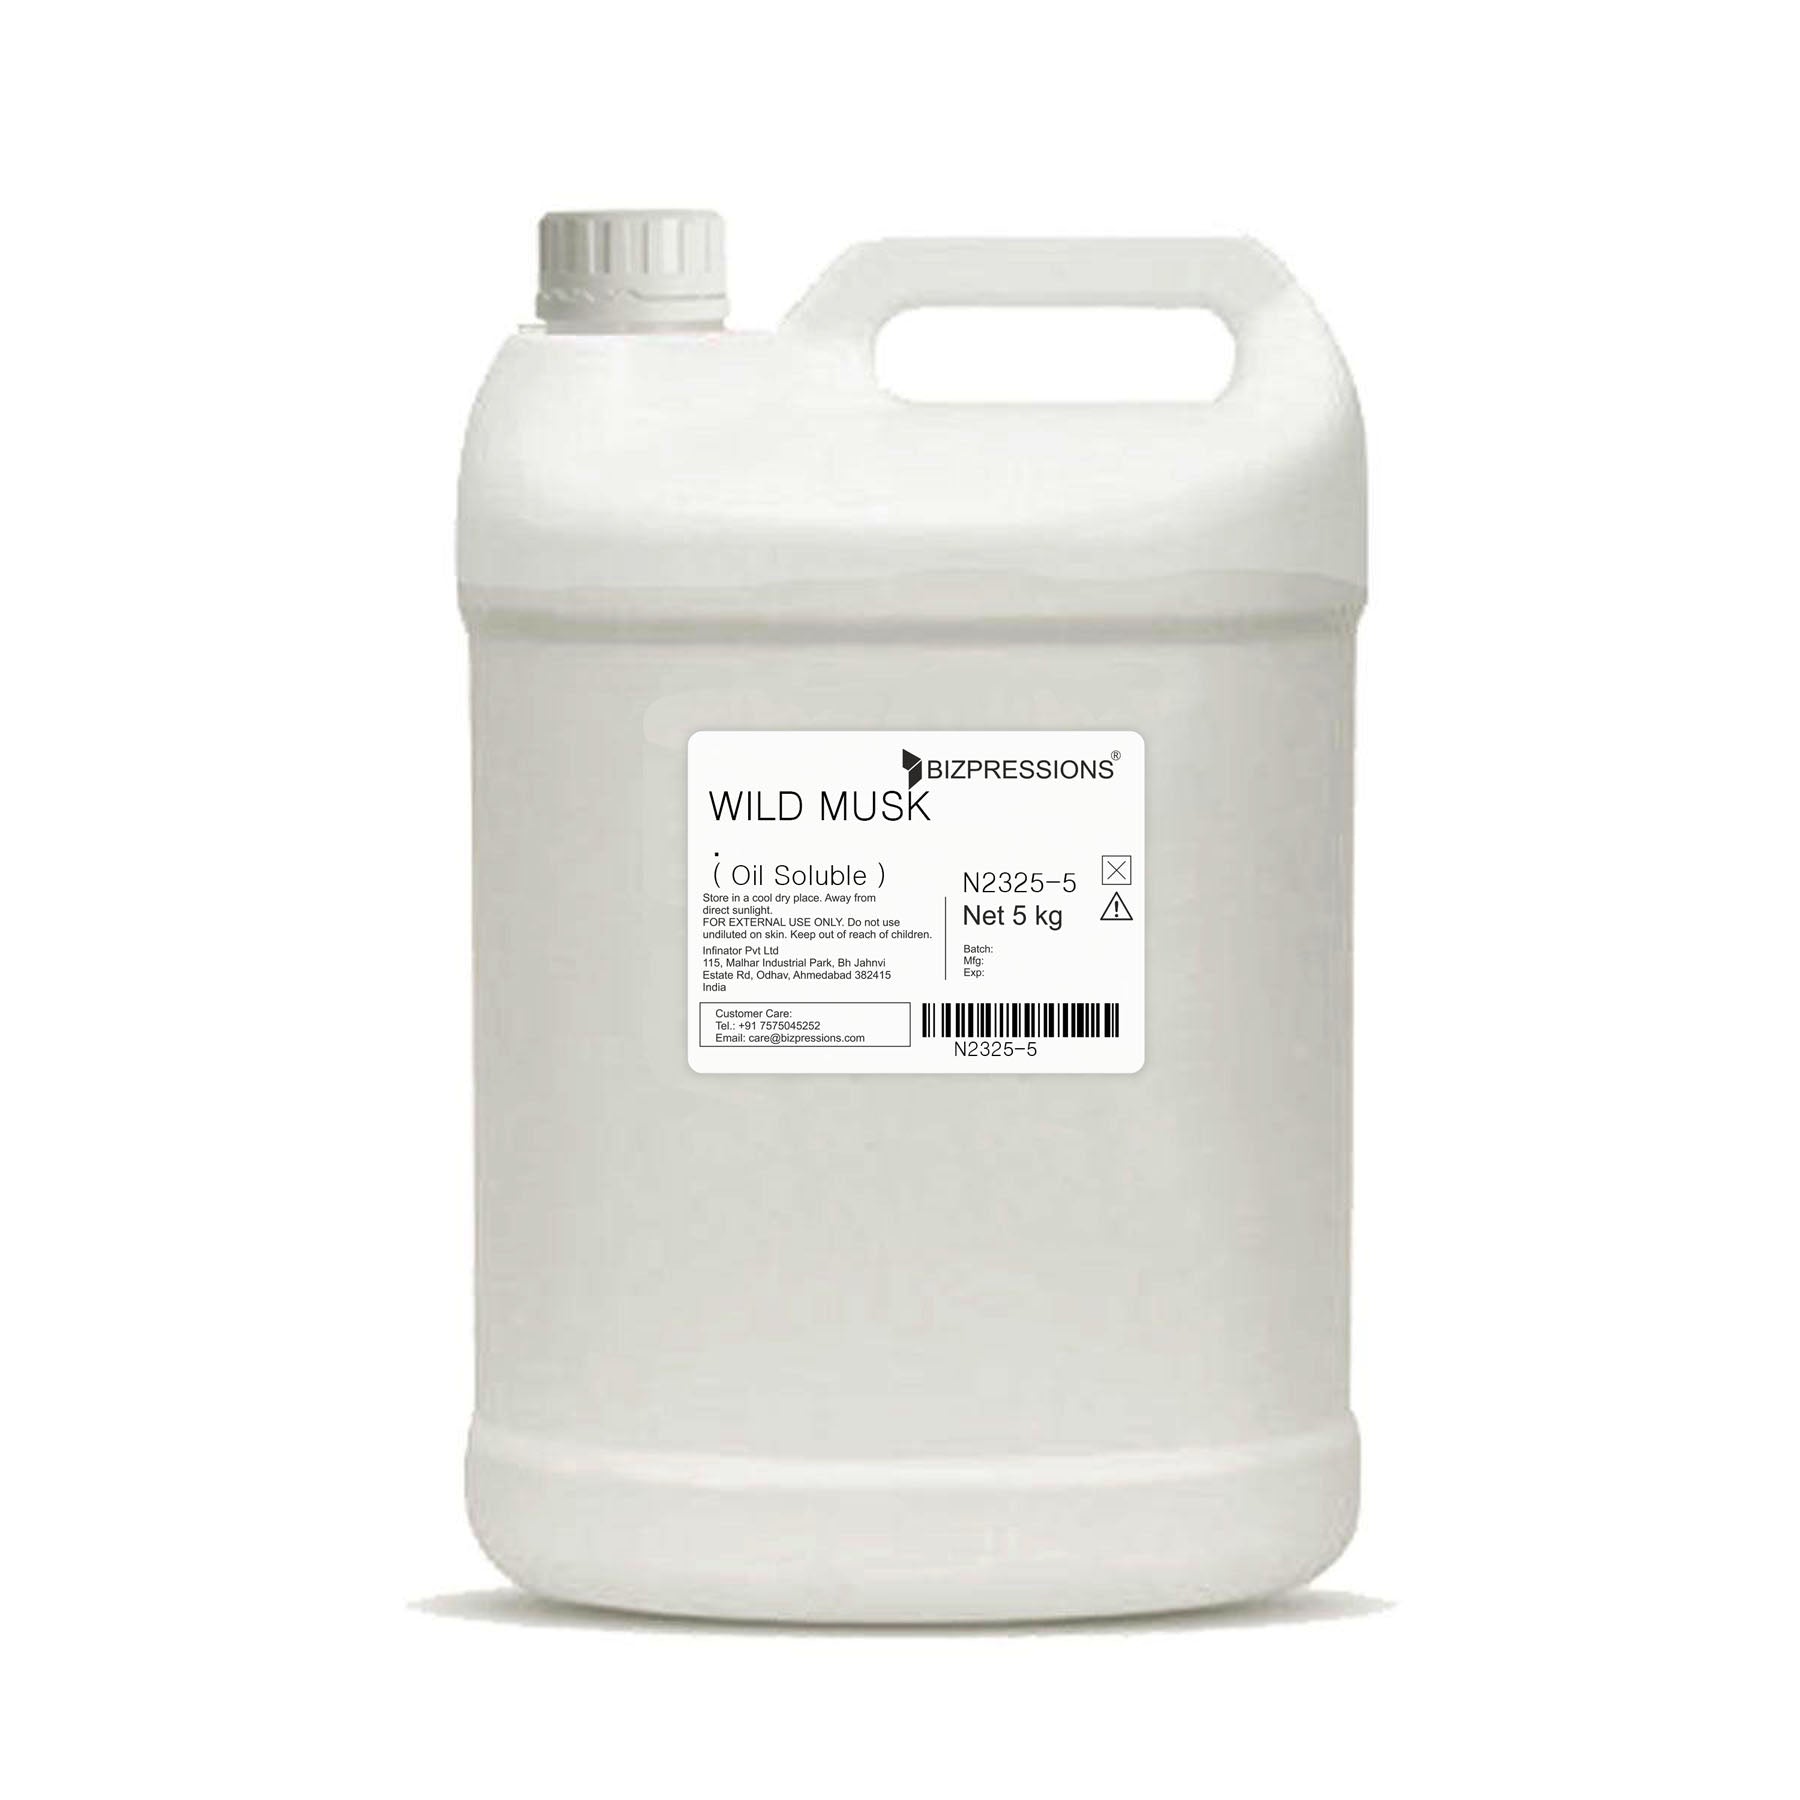 WILD MUSK - Fragrance ( Oil Soluble ) - 5 kg